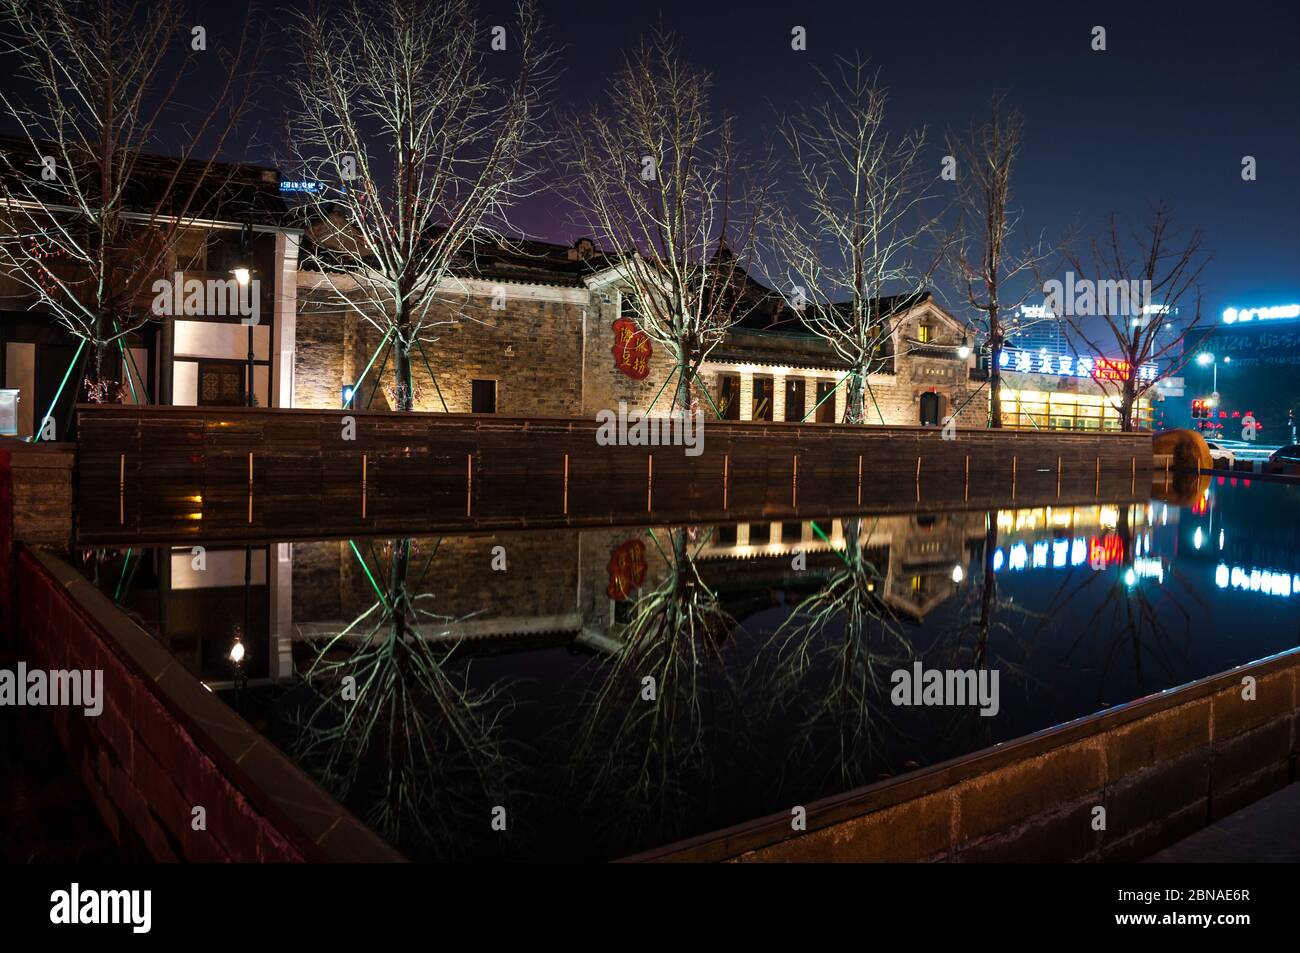 Gli edifici di vecchia costruzione presso il lago di Luna rigoglioso giardino complesso riflessa nell'acqua di notte a Ningbo, nella provincia di Zhejiang, Cina Foto Stock